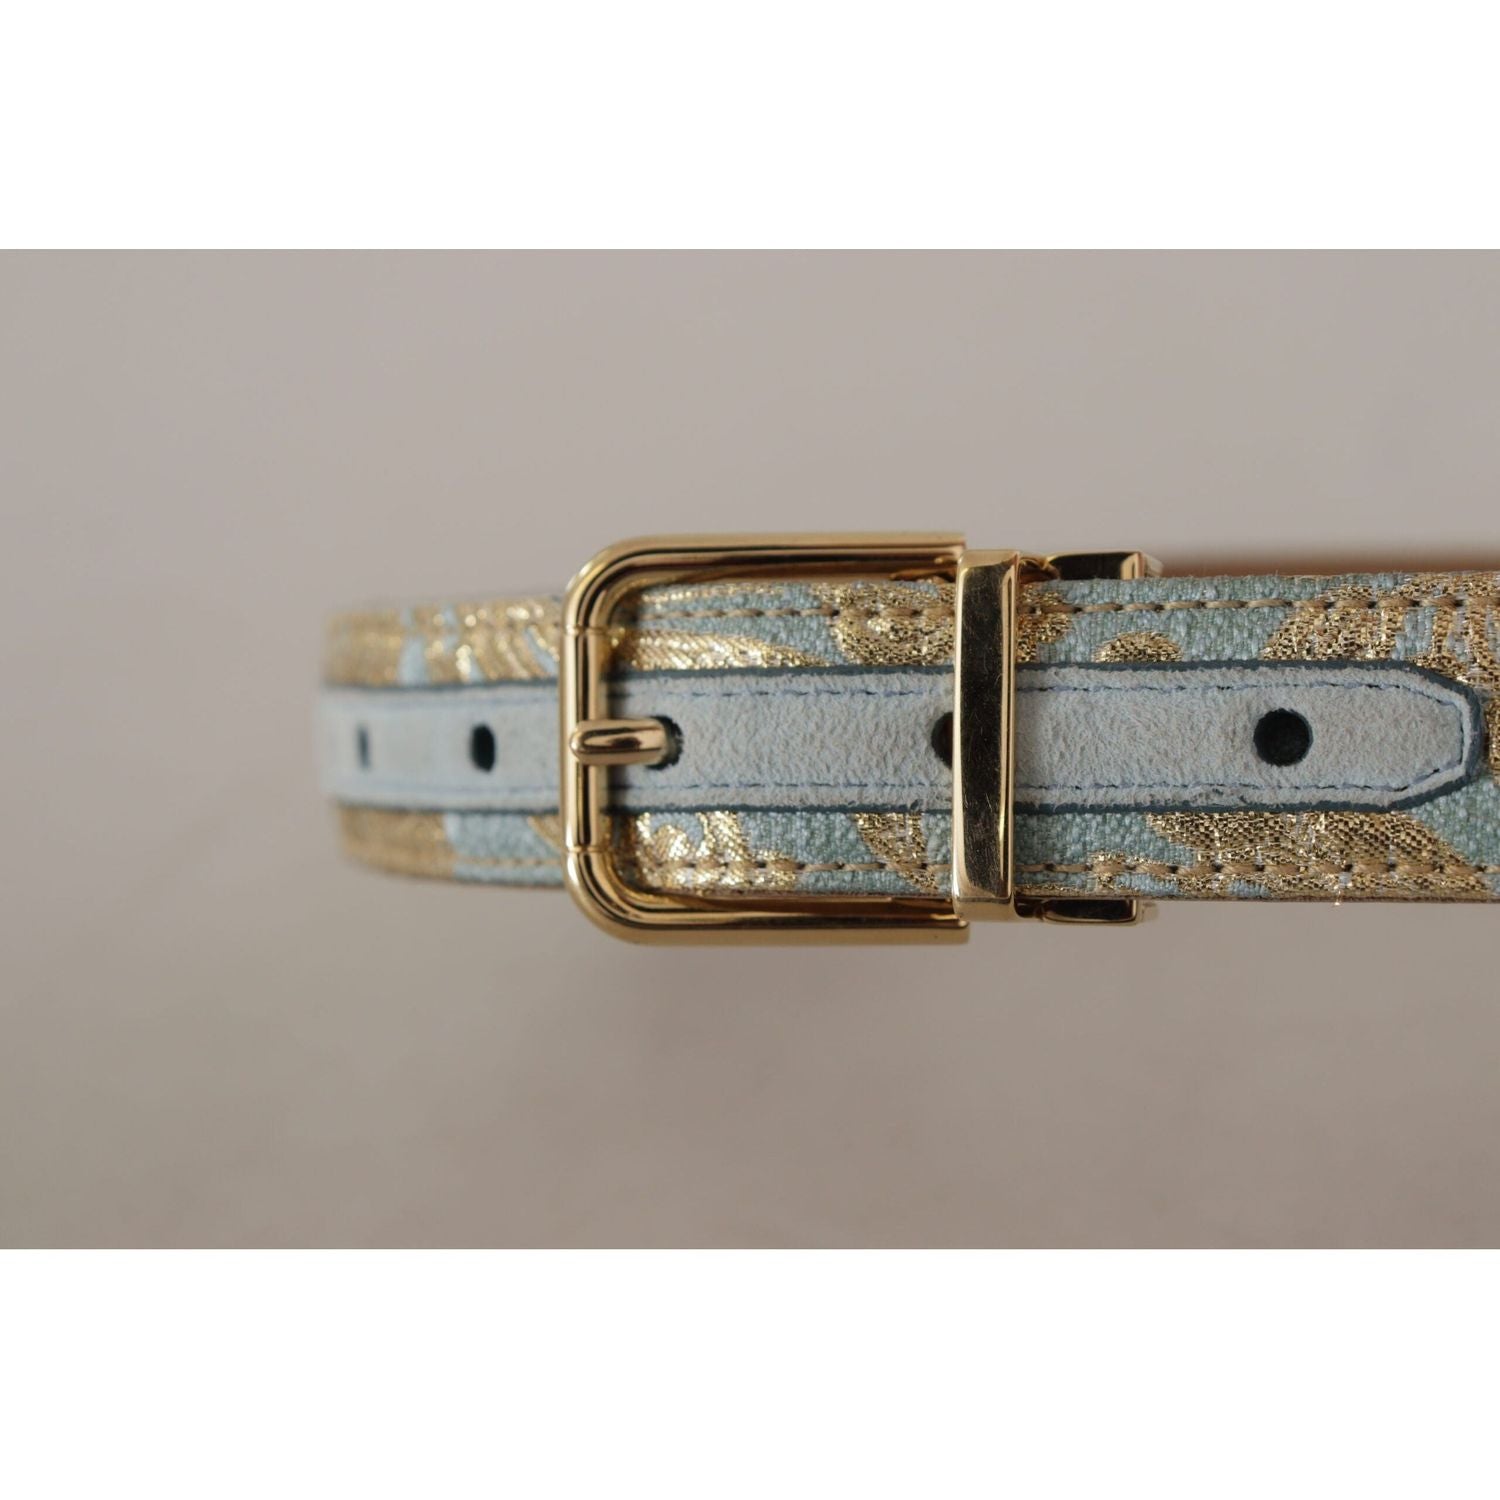 Dolce & Gabbana | Blue Leather Jacquard Embossed Gold Metal Buckle Belt - McRichard Designer Brands